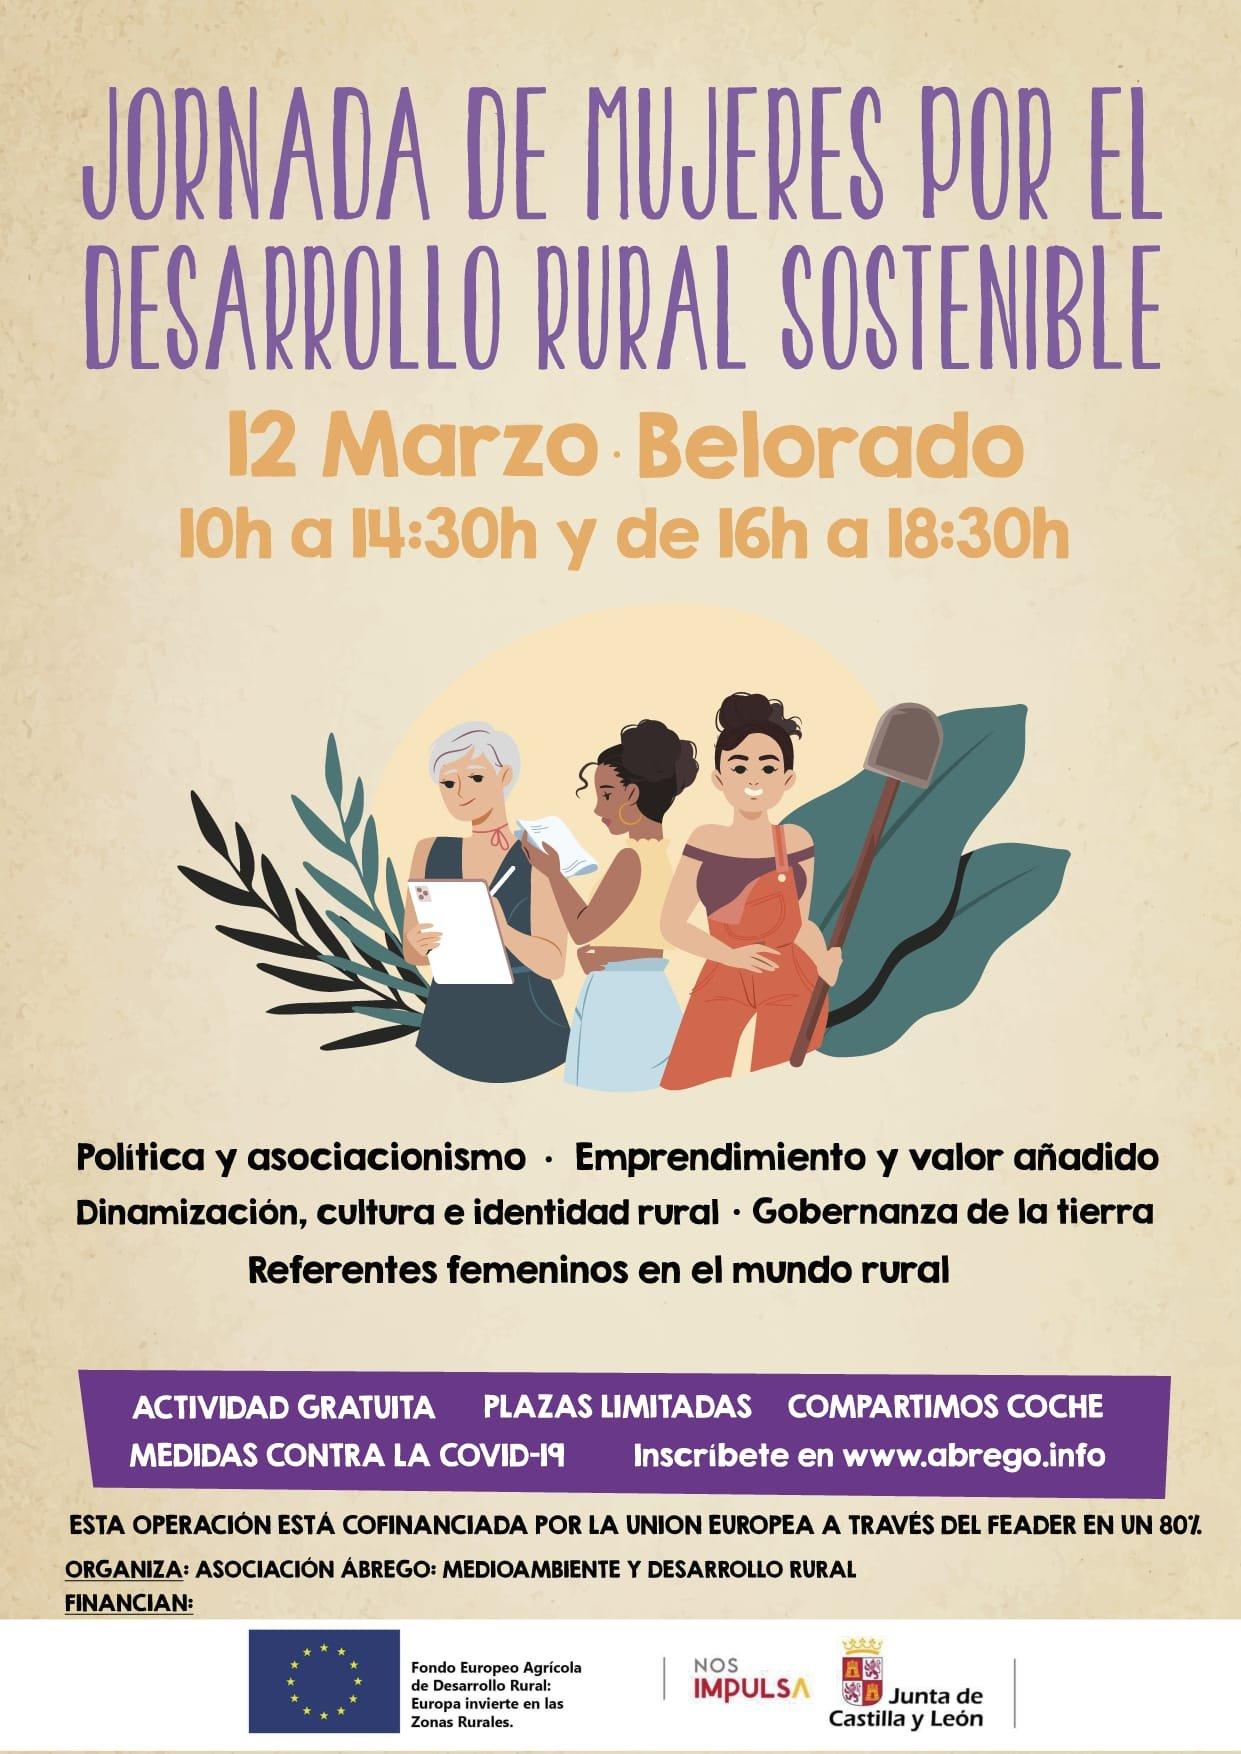 Jornada de mujeres por el desarrollo rural sostenible